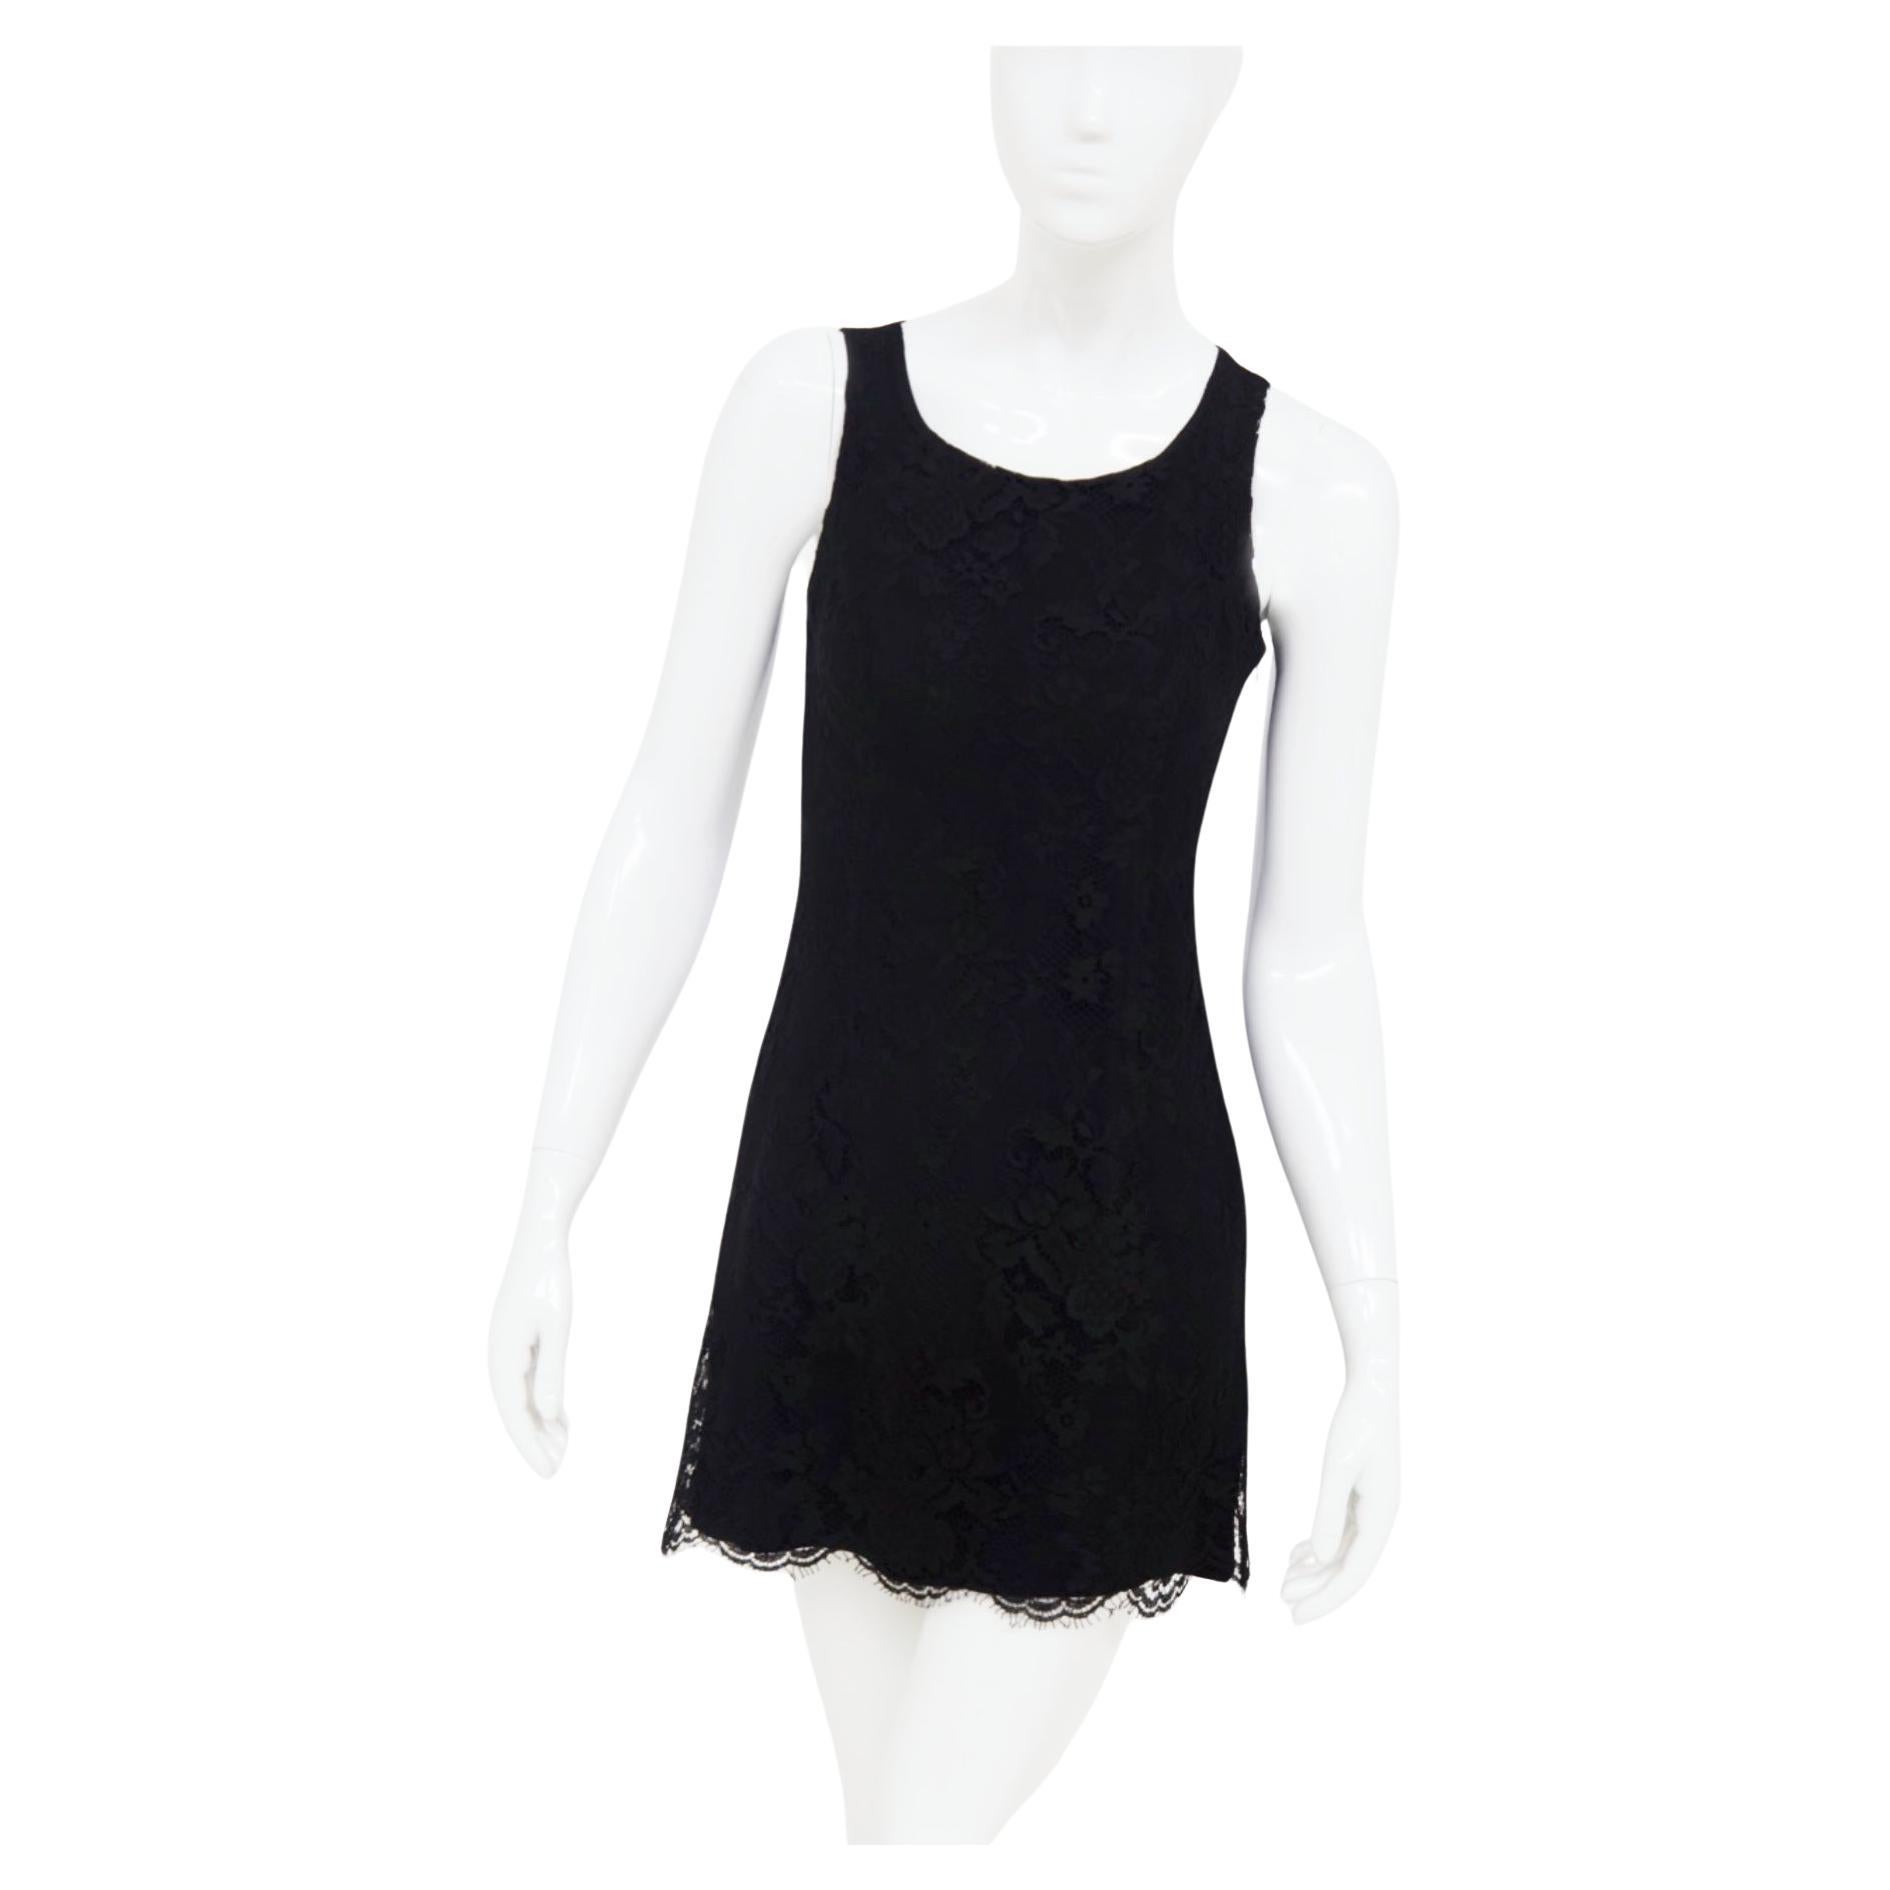 Versus Gianni Versace Vintage Black Lace Dress